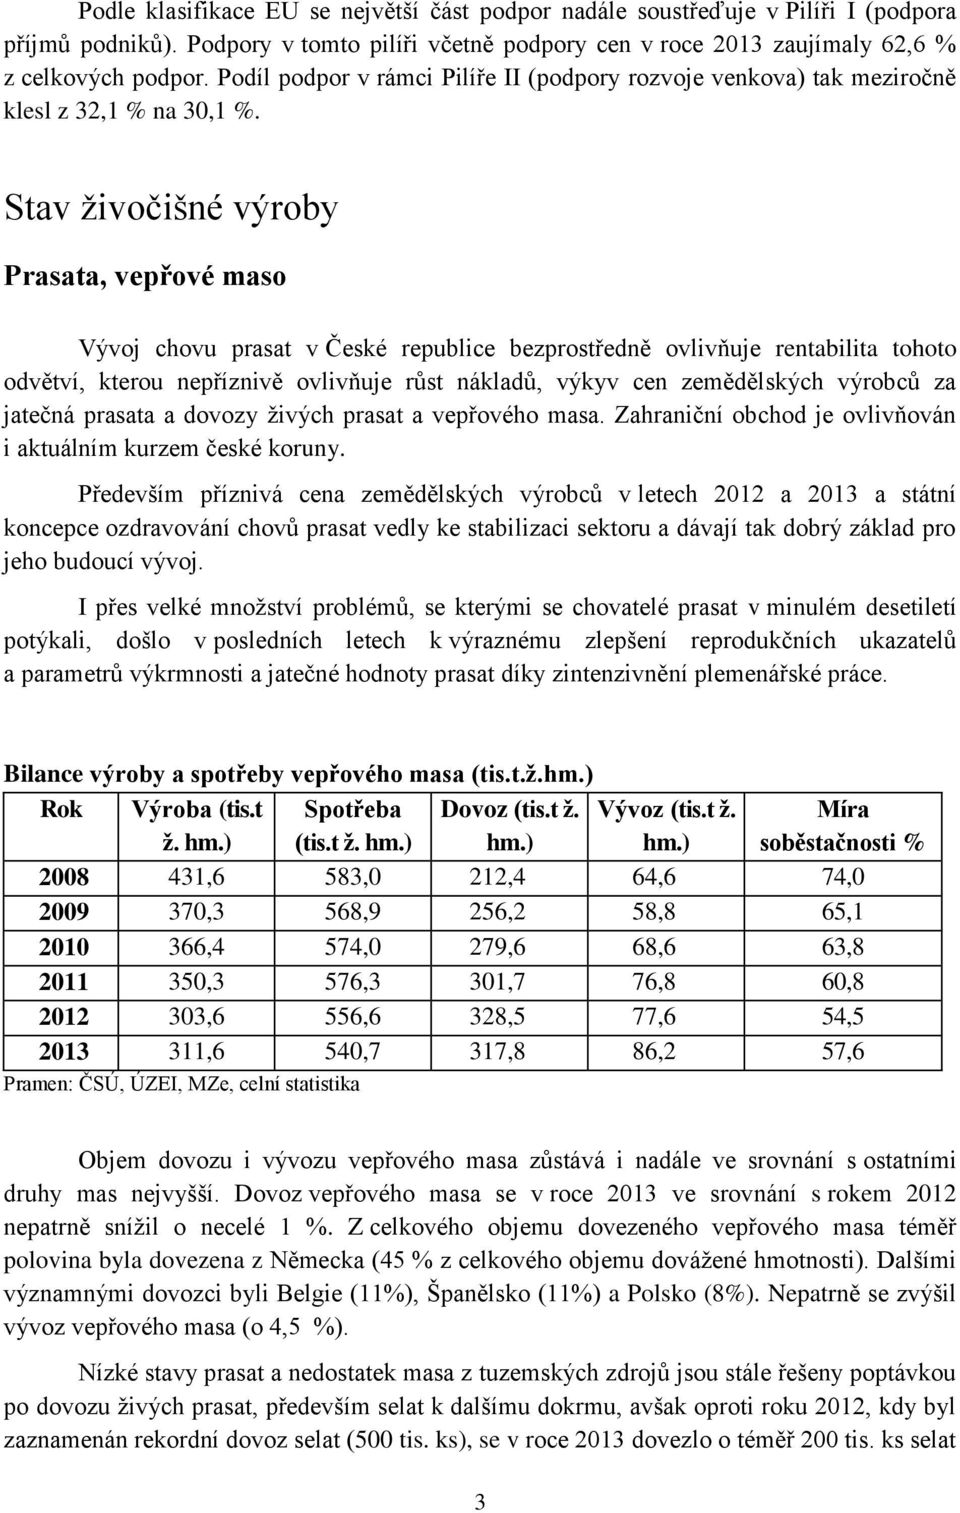 Stav živočišné výroby Prasata, vepřové maso Vývoj chovu prasat v České republice bezprostředně ovlivňuje rentabilita tohoto odvětví, kterou nepříznivě ovlivňuje růst nákladů, výkyv cen zemědělských